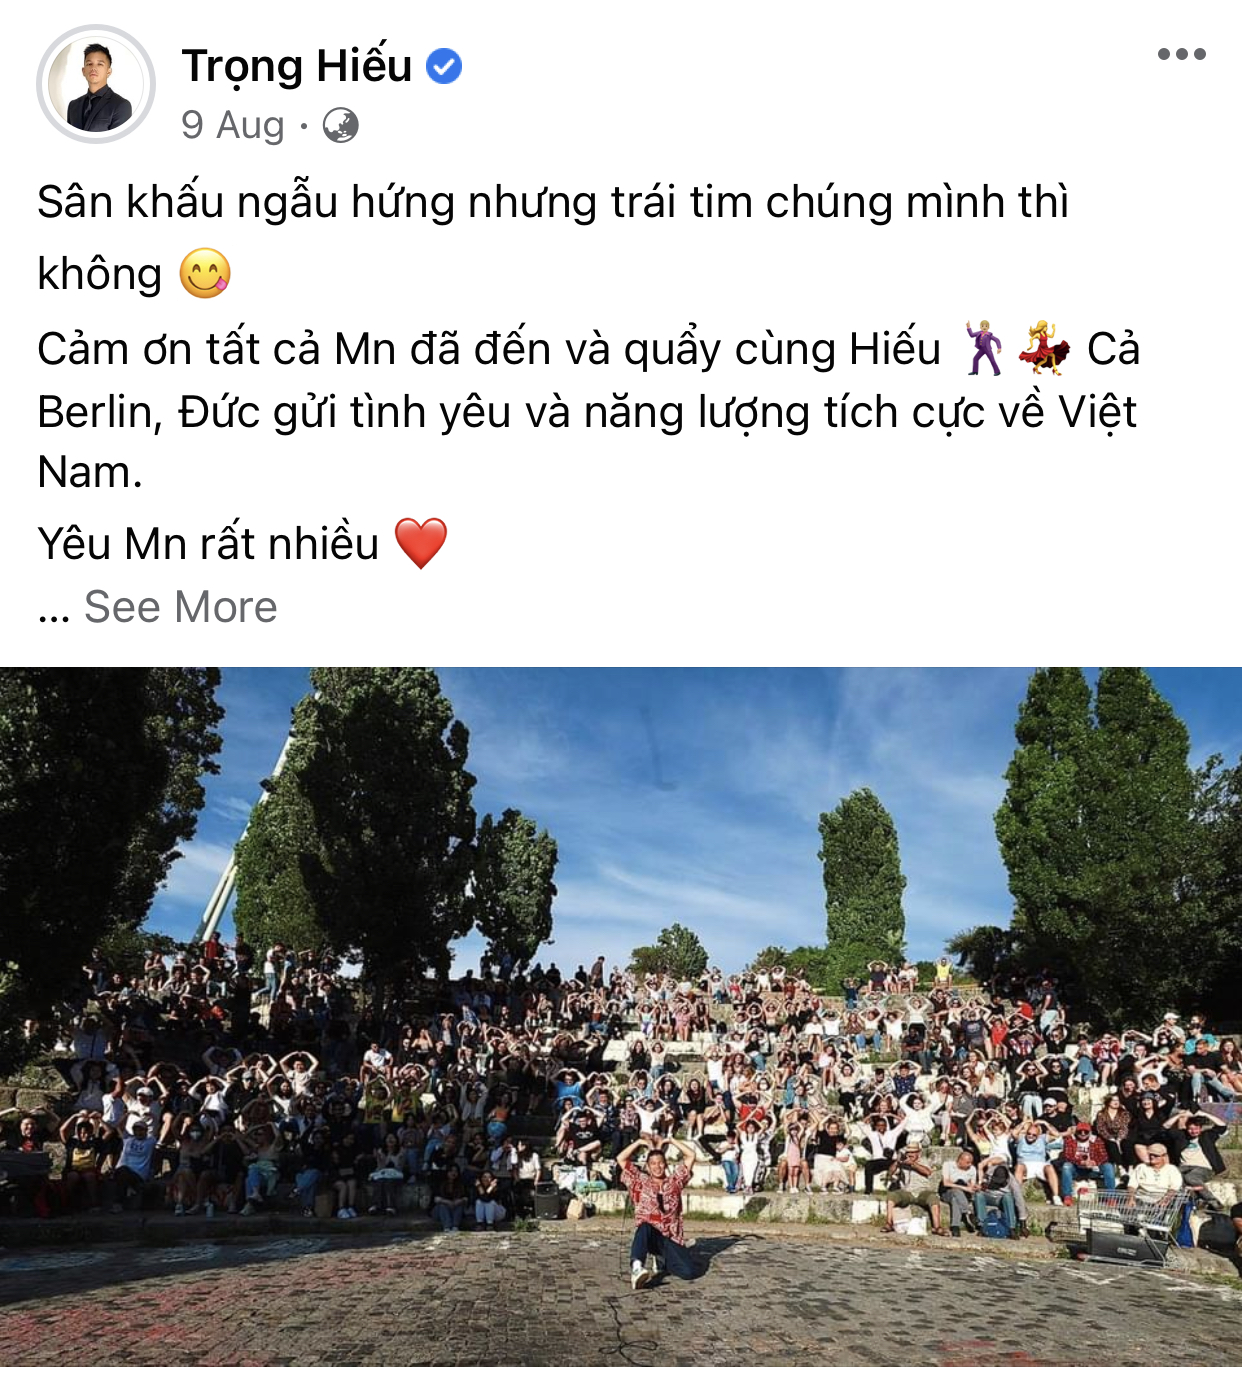 'Vì chúng ta yêu - Sống là hy vọng': Tình cảm đẹp đẽ của ca sĩ Trọng Hiếu gửi khán giả Việt từ khoảng cách 10.000km - ảnh 2